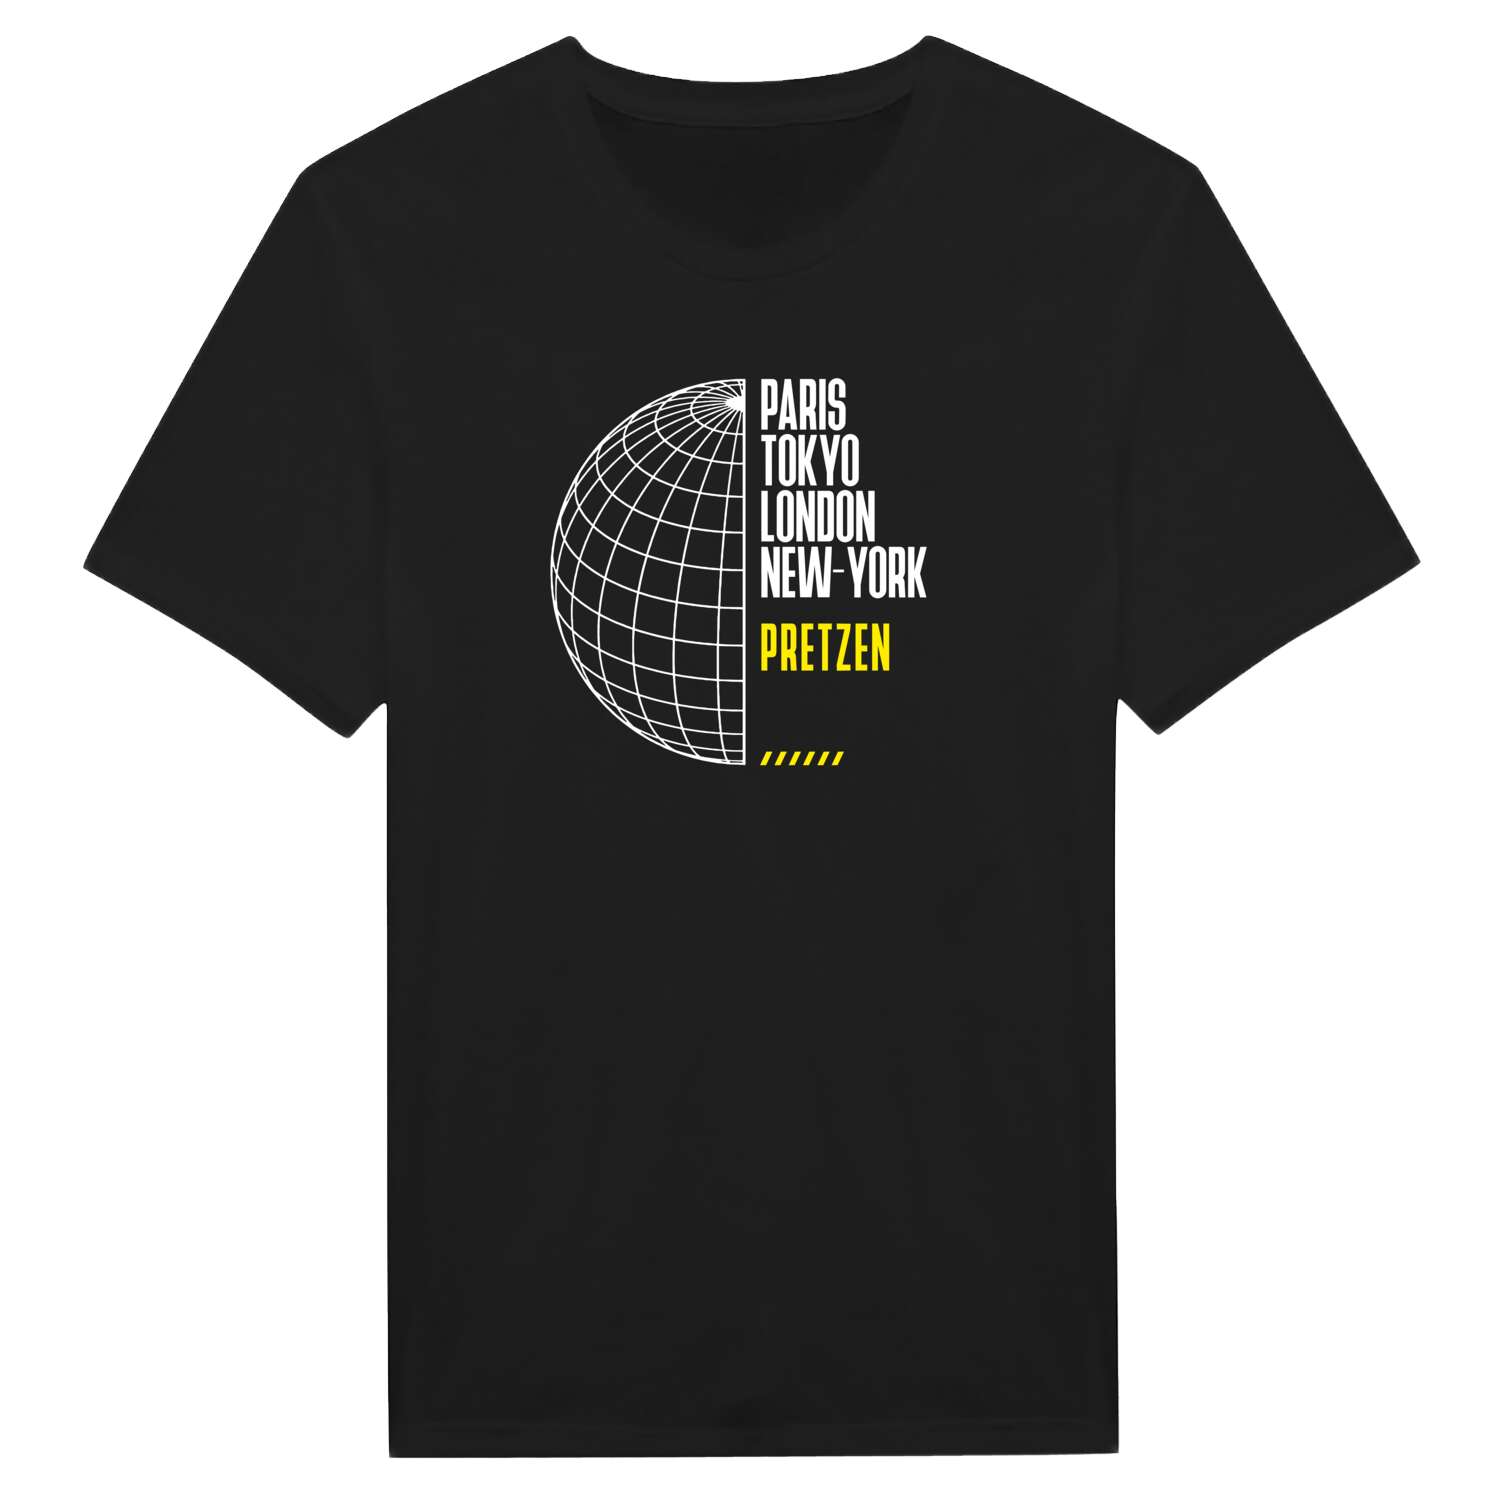 Pretzen T-Shirt »Paris Tokyo London«